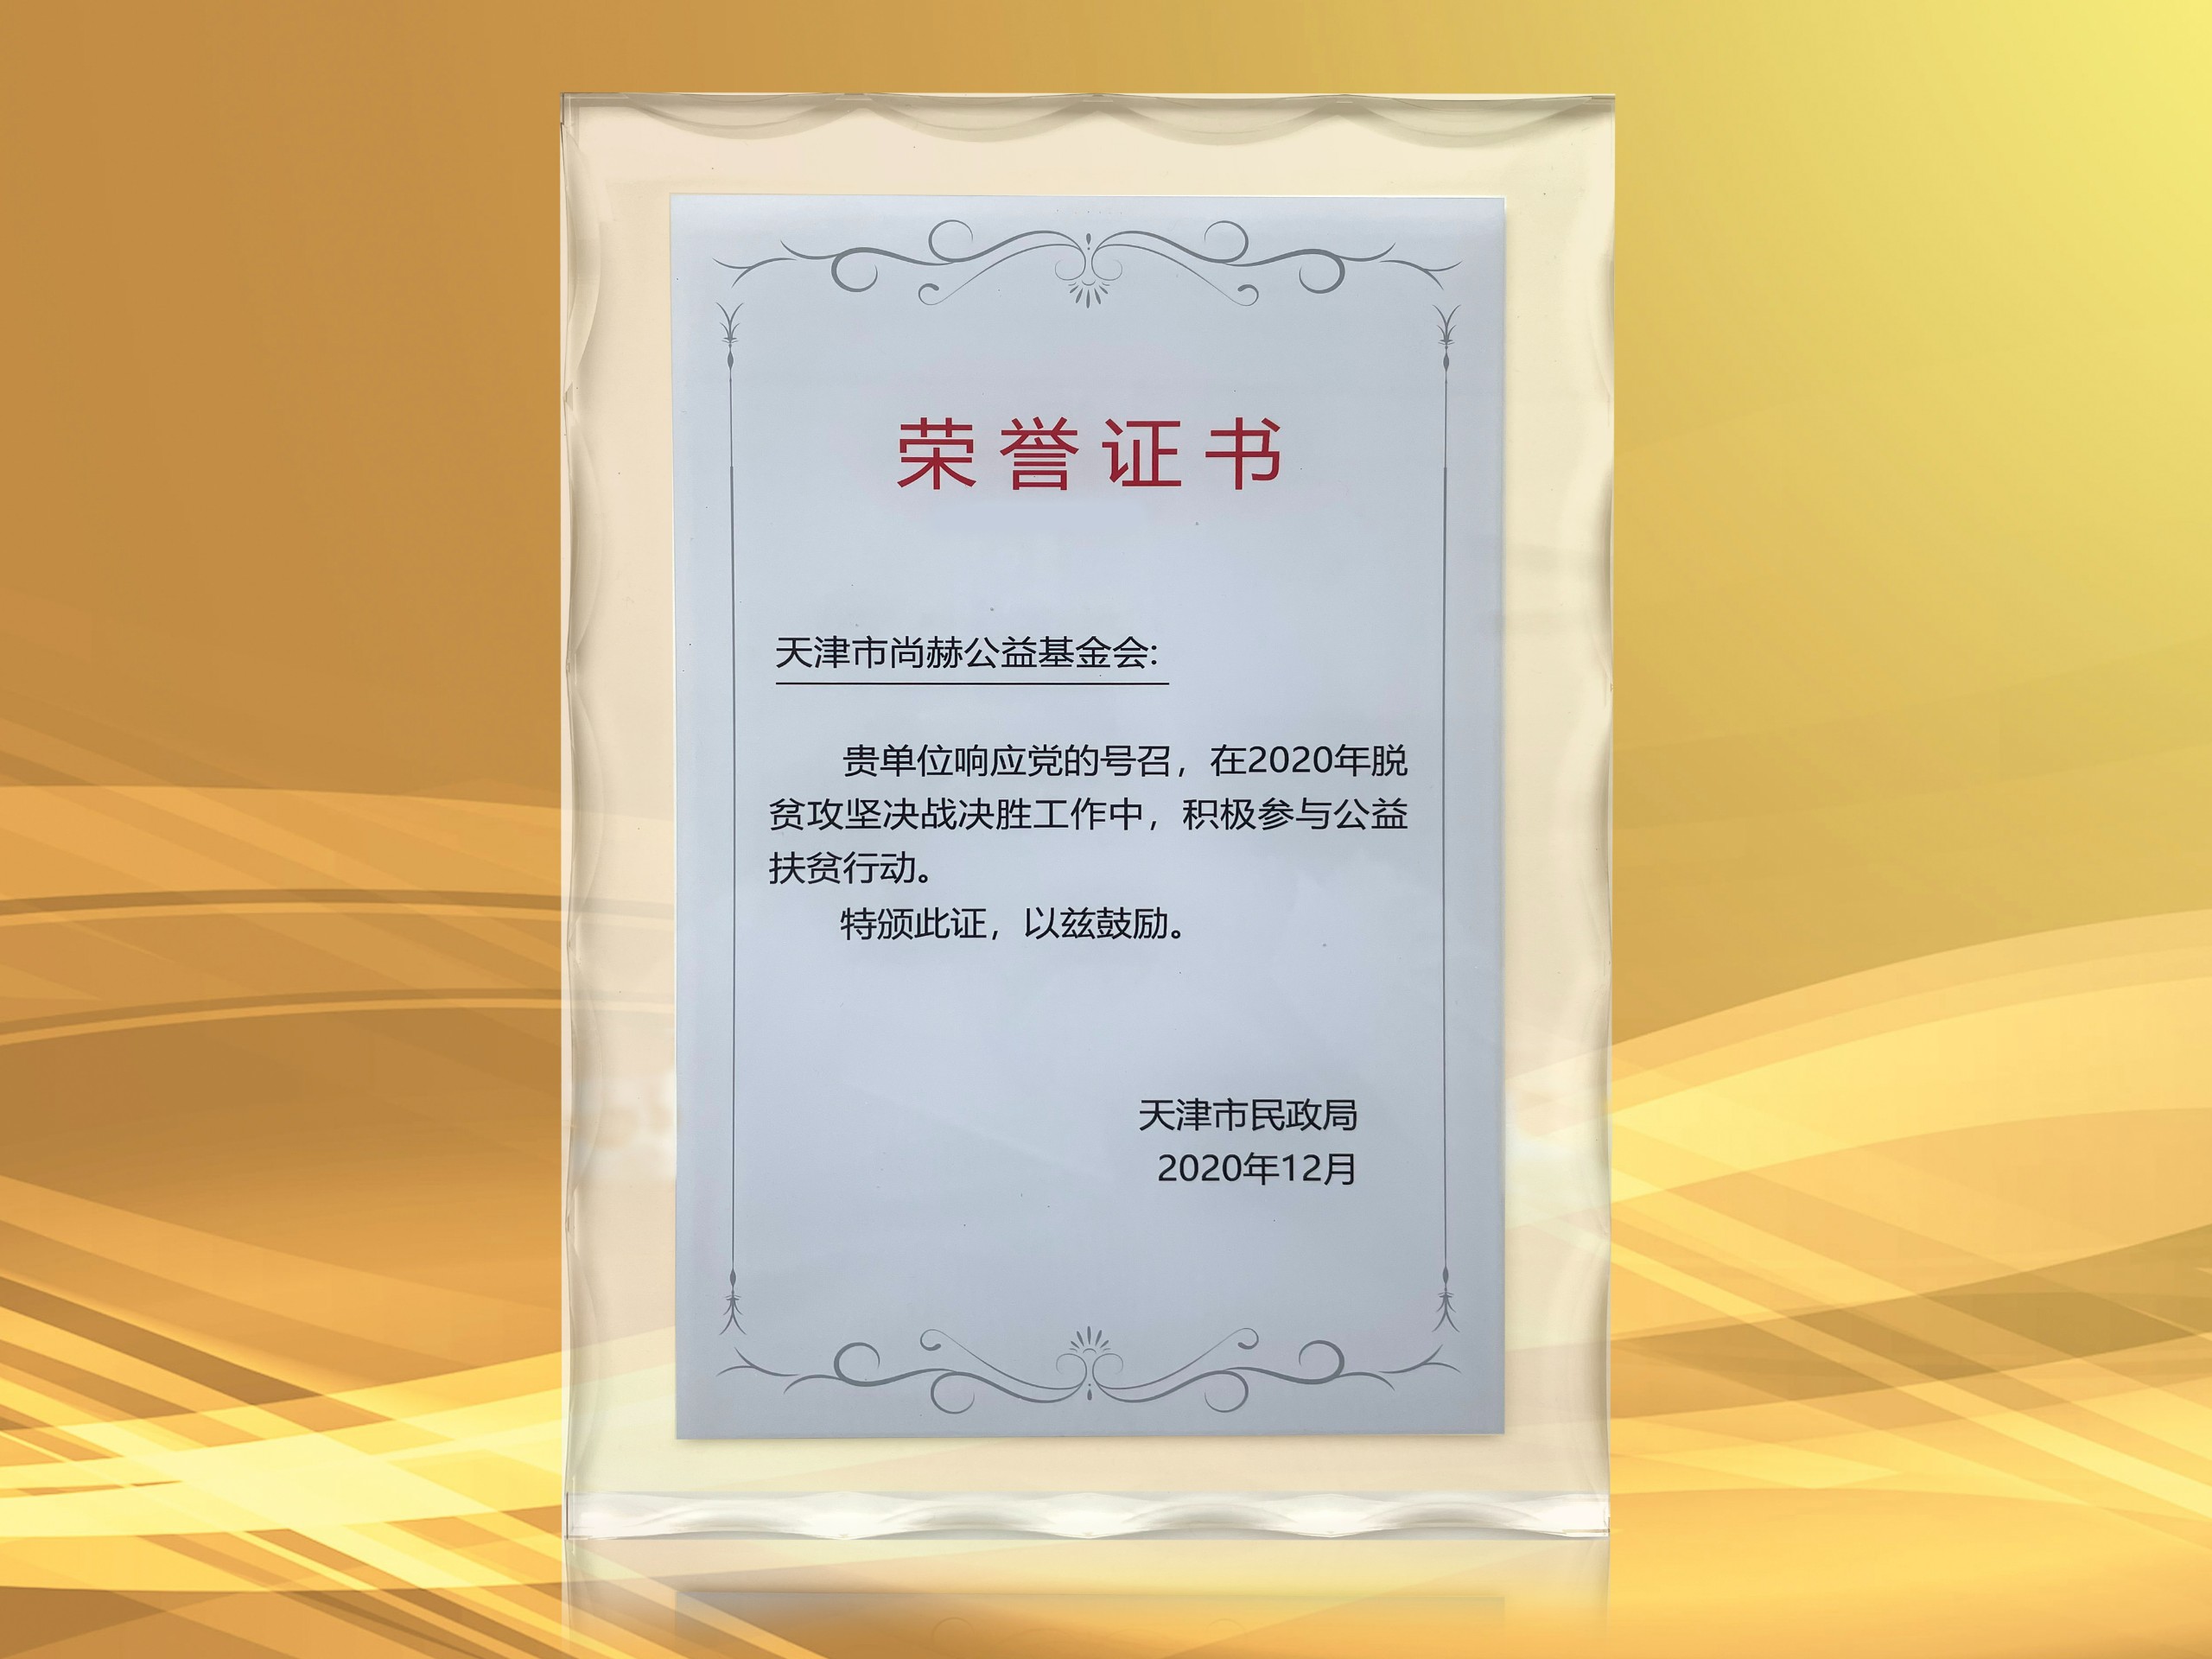 2021年3月-尚赫公益基金会获得天津市民政局颁发的荣誉证书